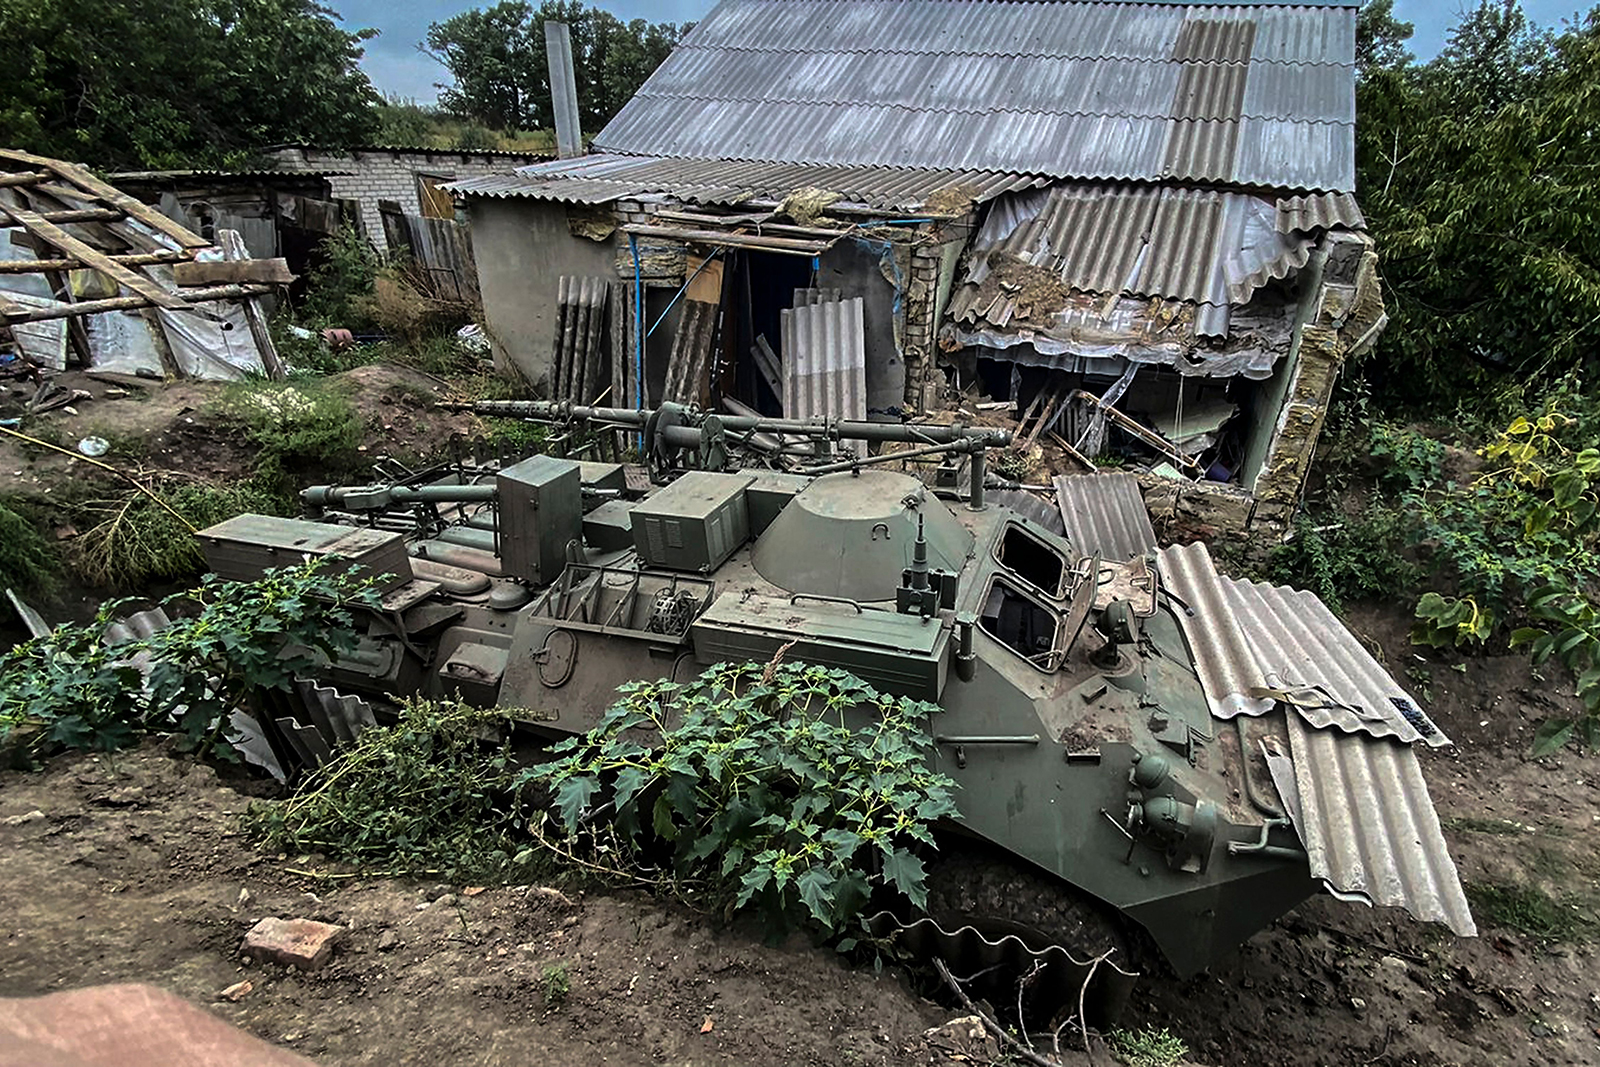 9 月 11 日、Izyum 郊外の村の近くで見捨てられたロシアの装甲車両。